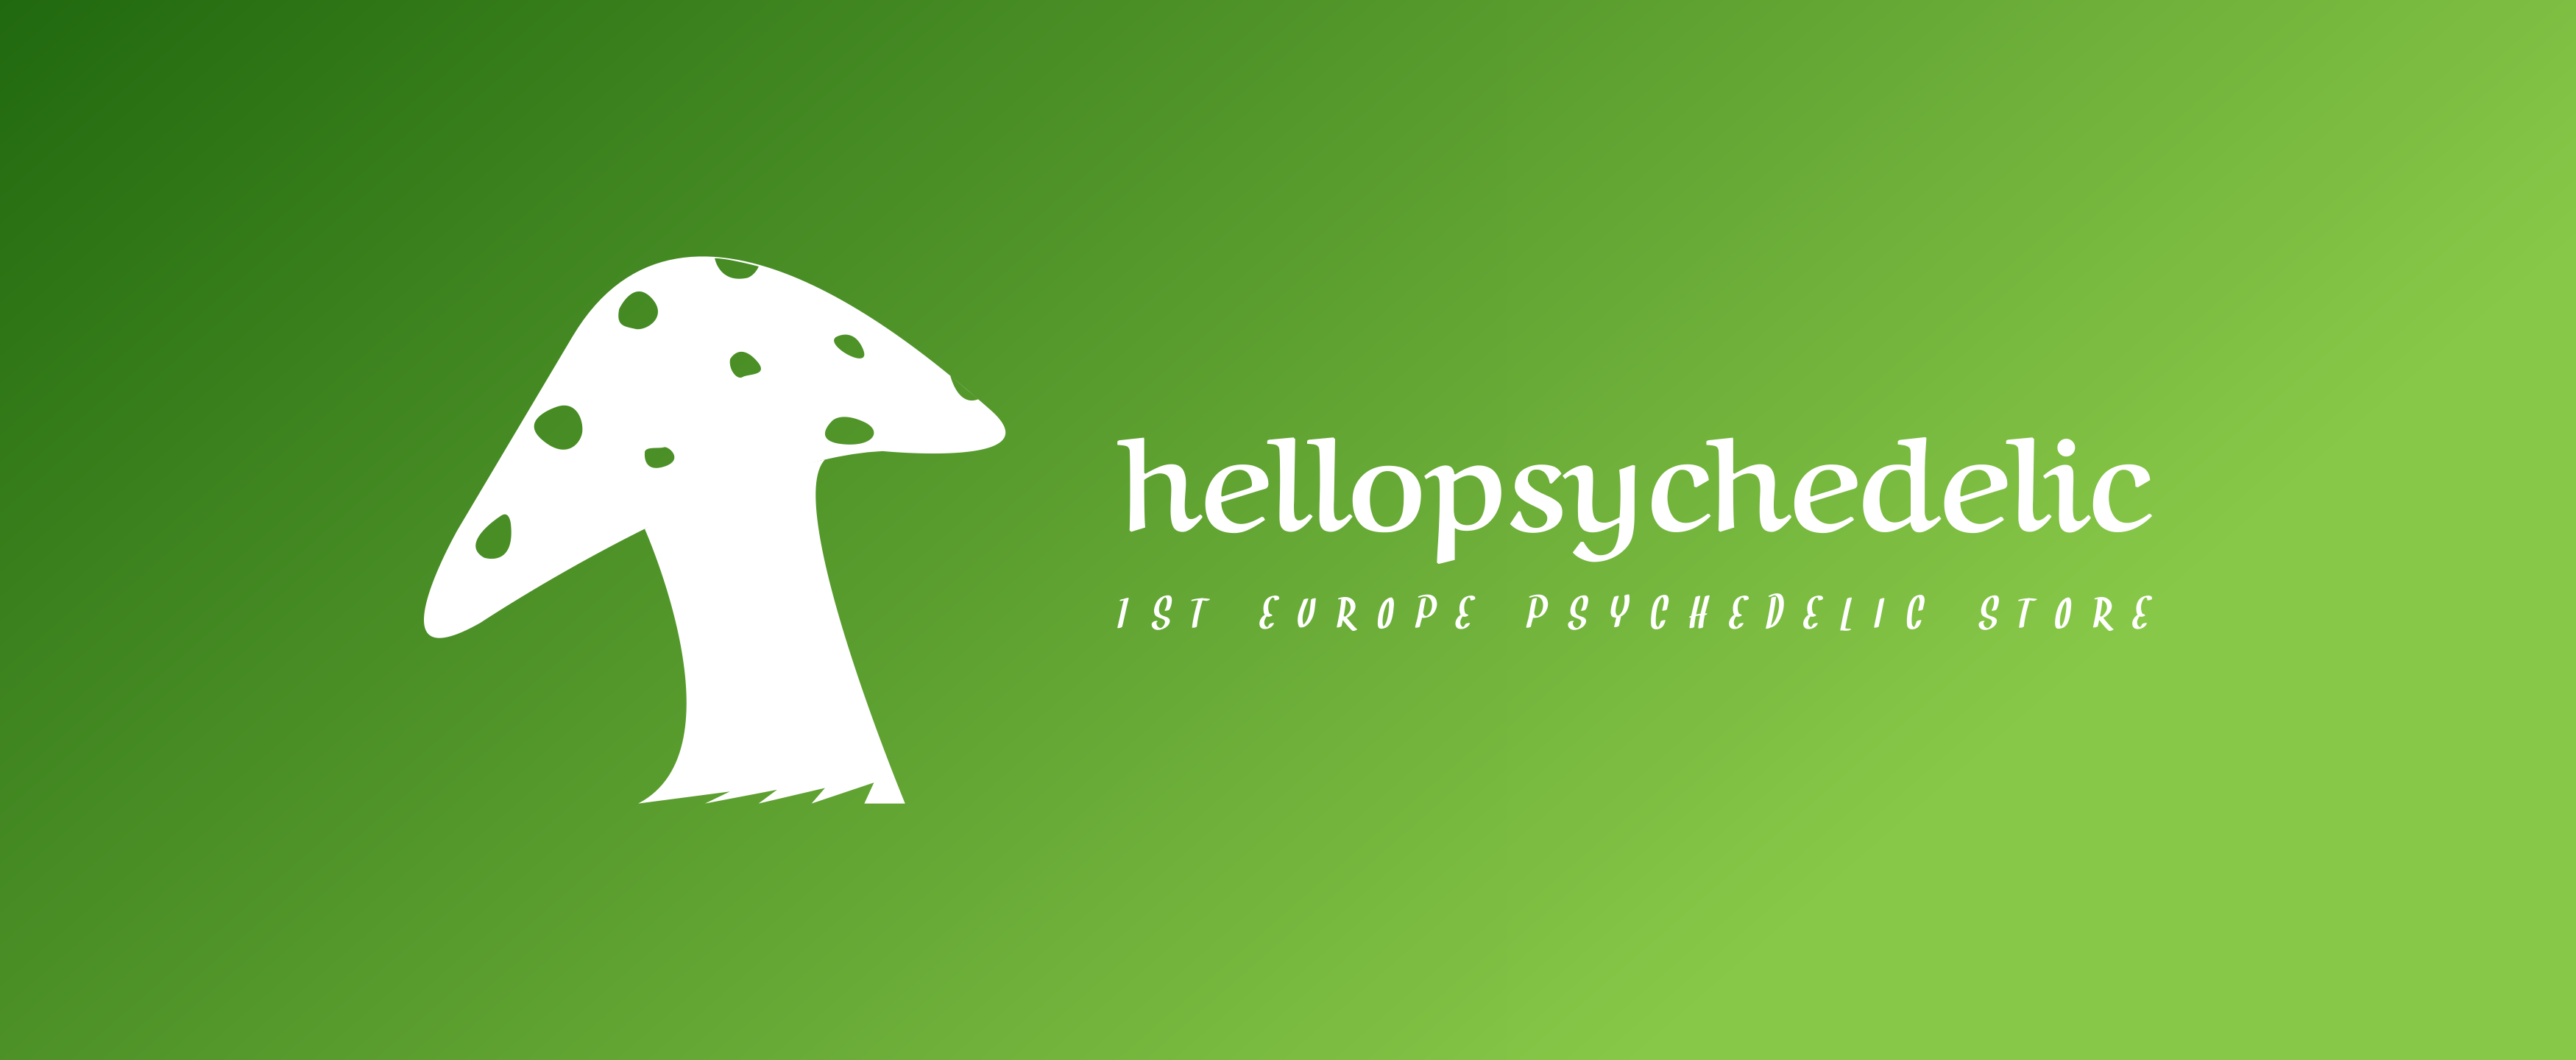 Hellopsychedelicshop